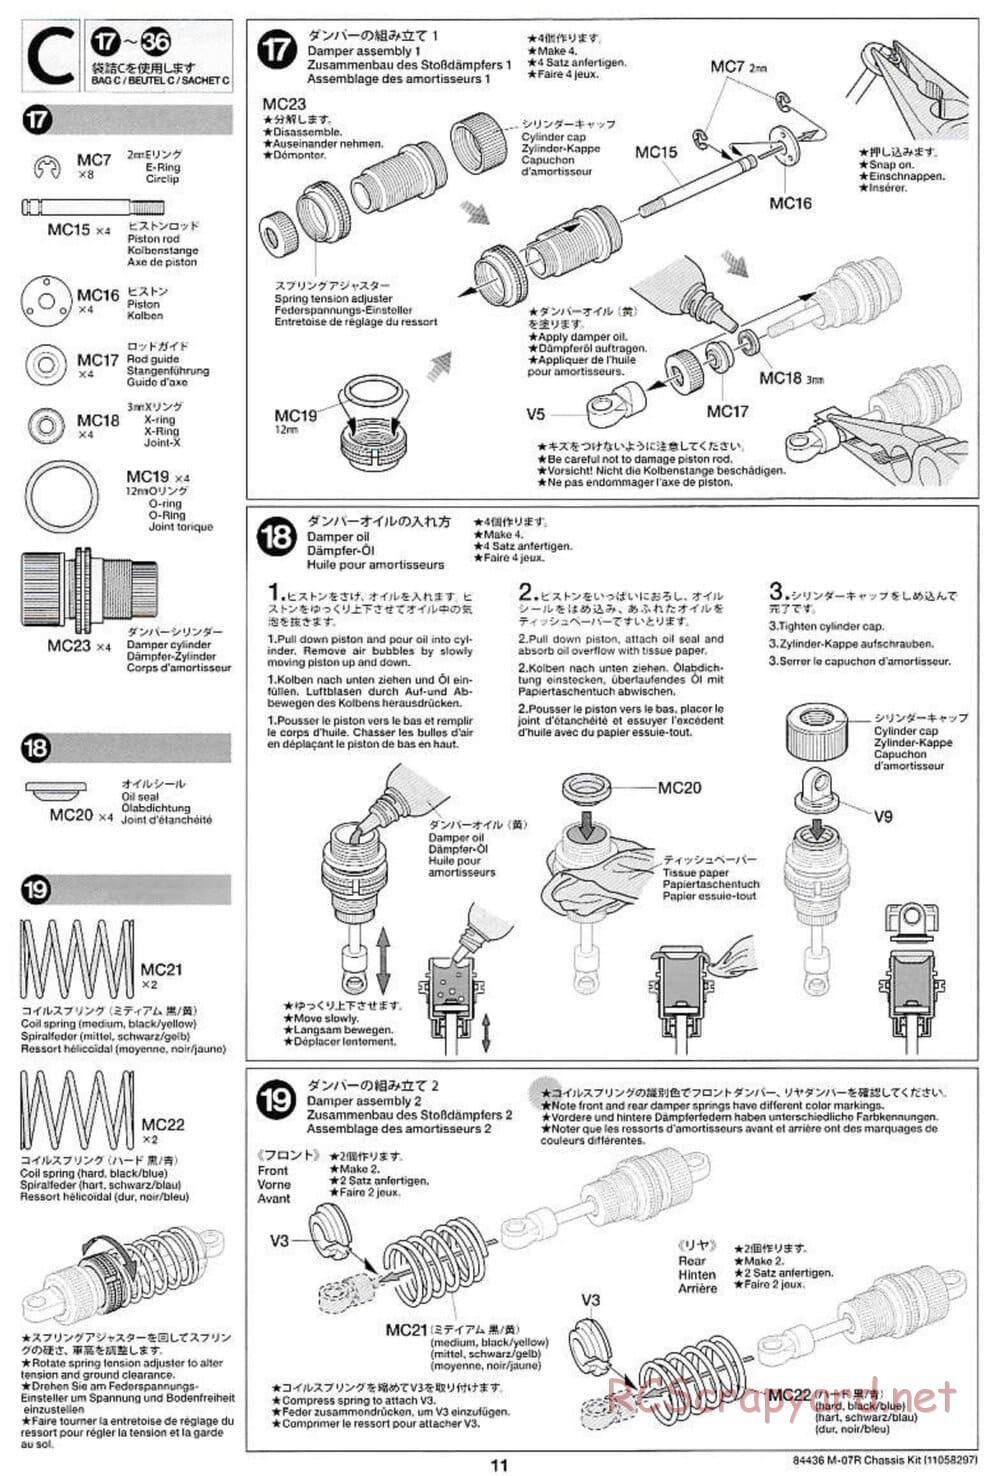 Tamiya - M-07R Chassis - Manual - Page 11